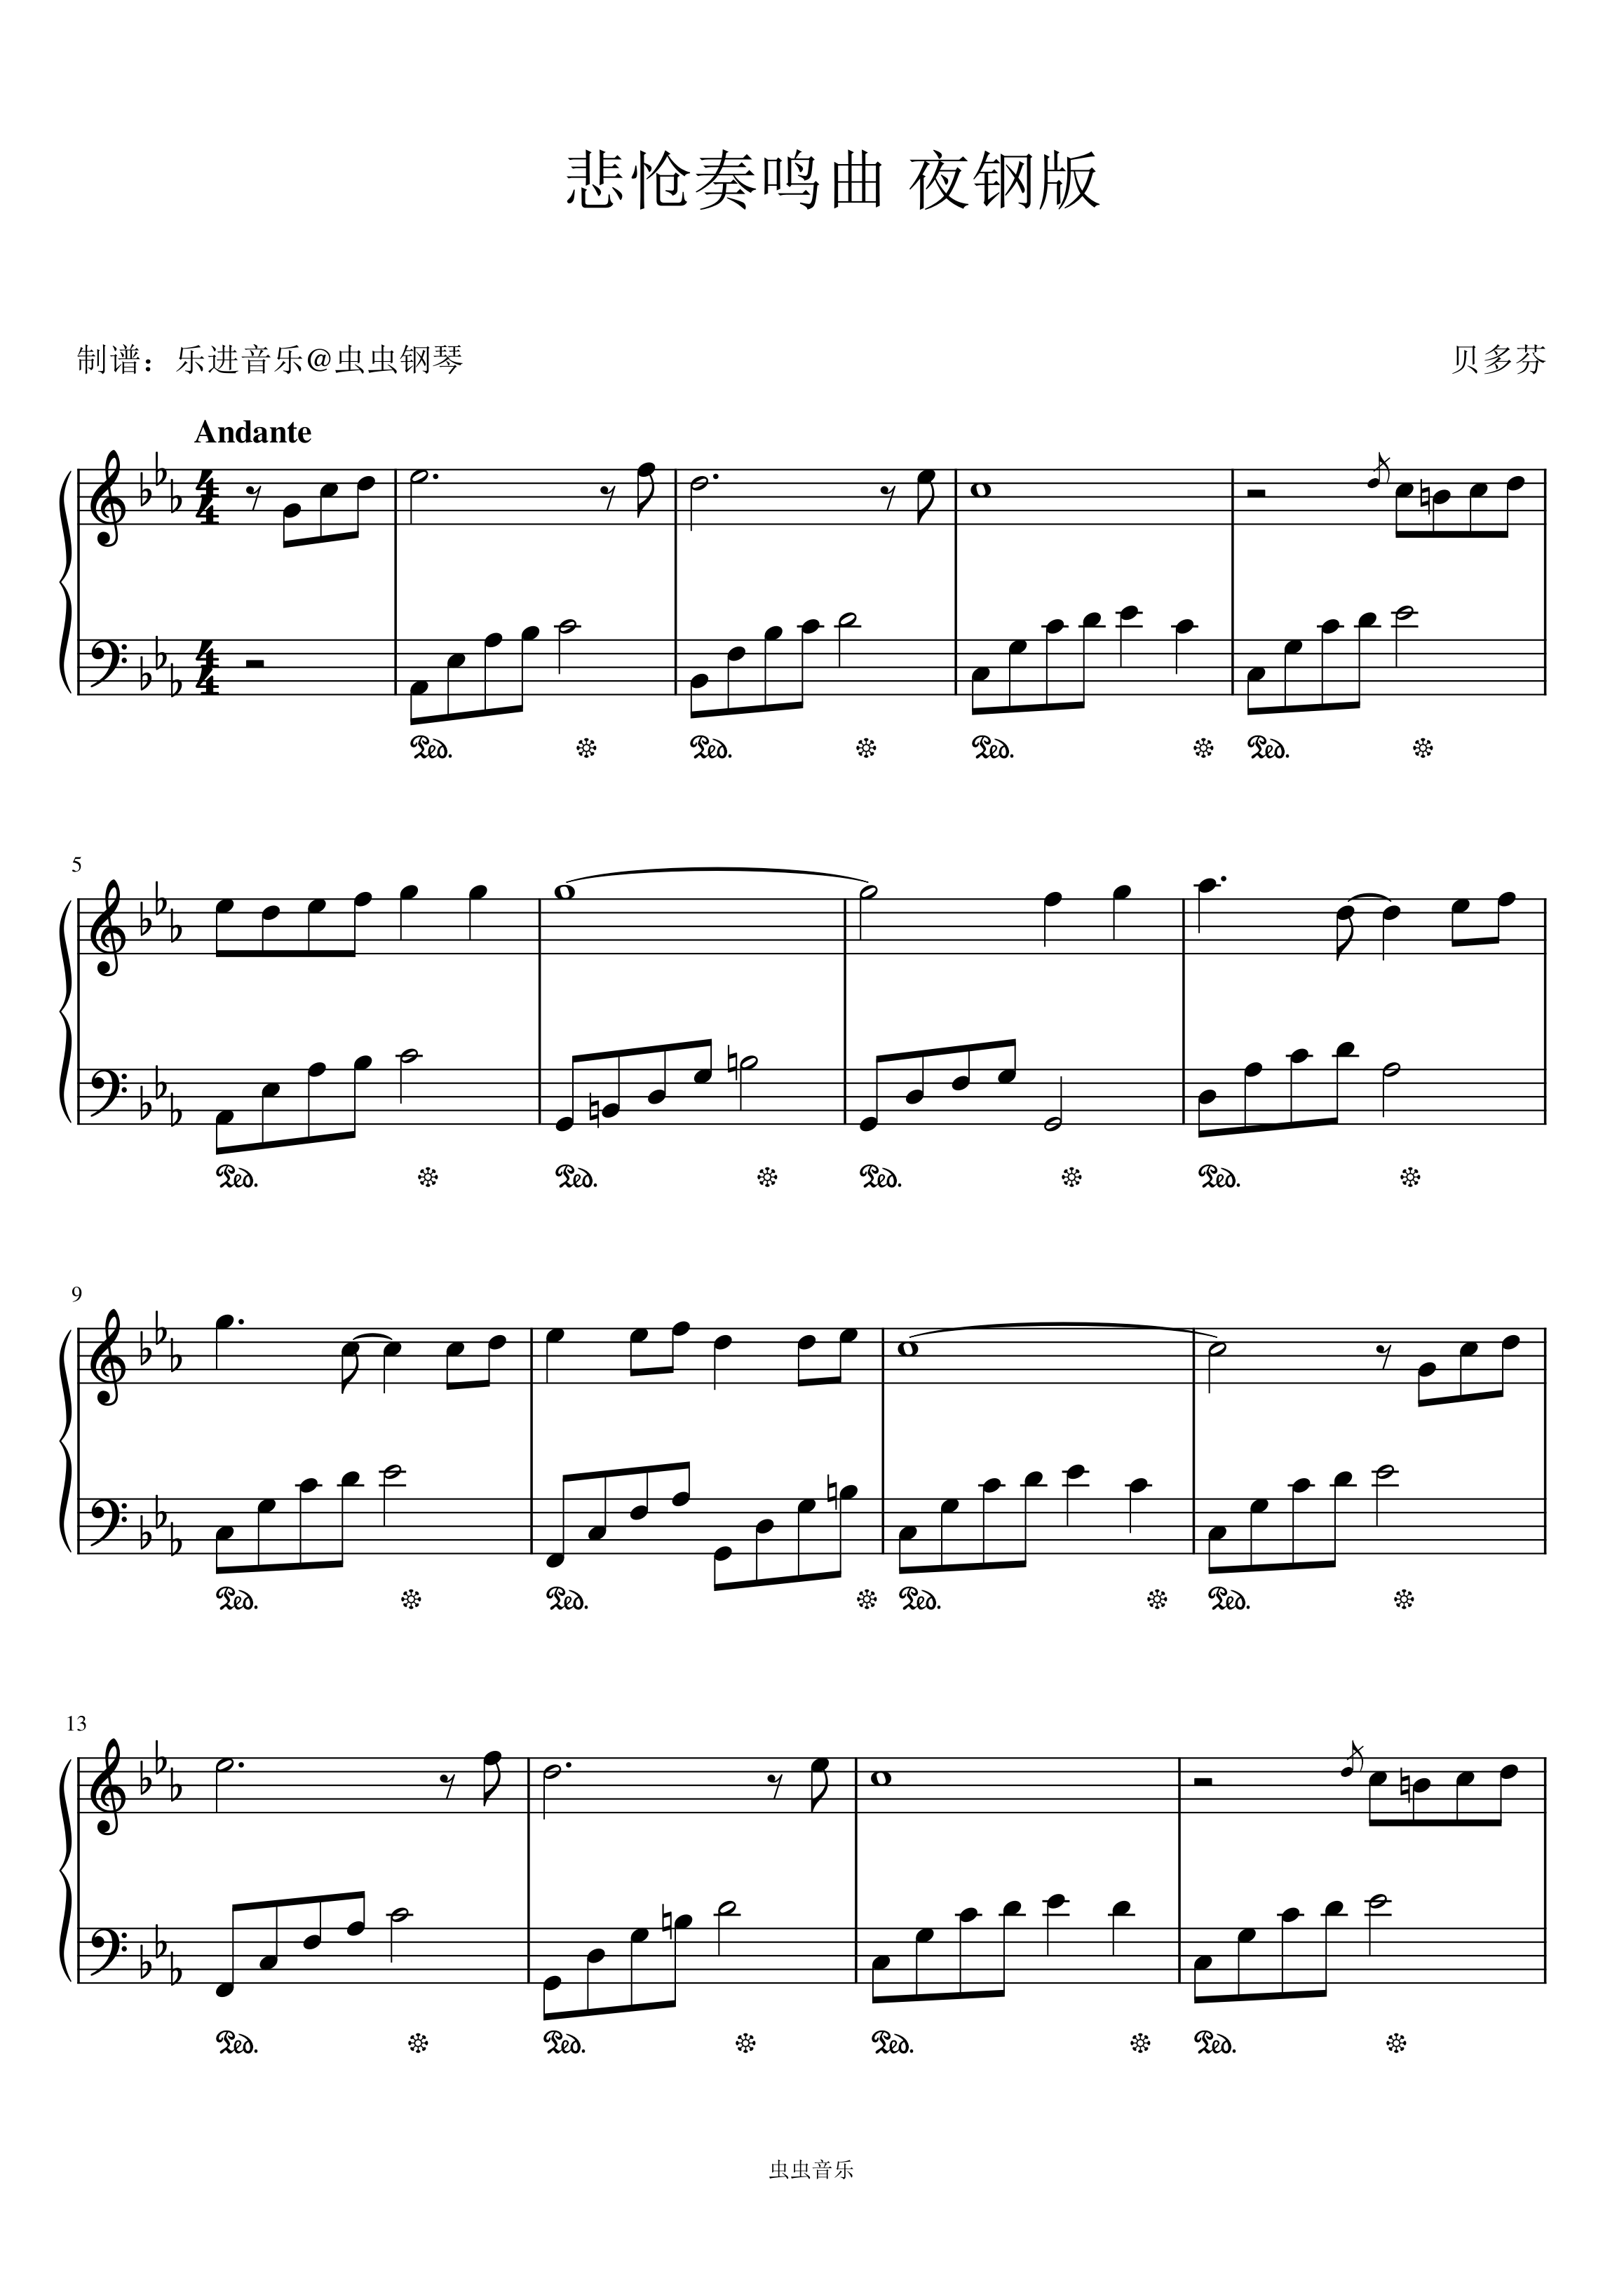 贝多芬【悲怆奏鸣曲第三乐章 C调简单版 贝多芬钢琴谱】_在线免费打印下载-爱弹琴乐谱网